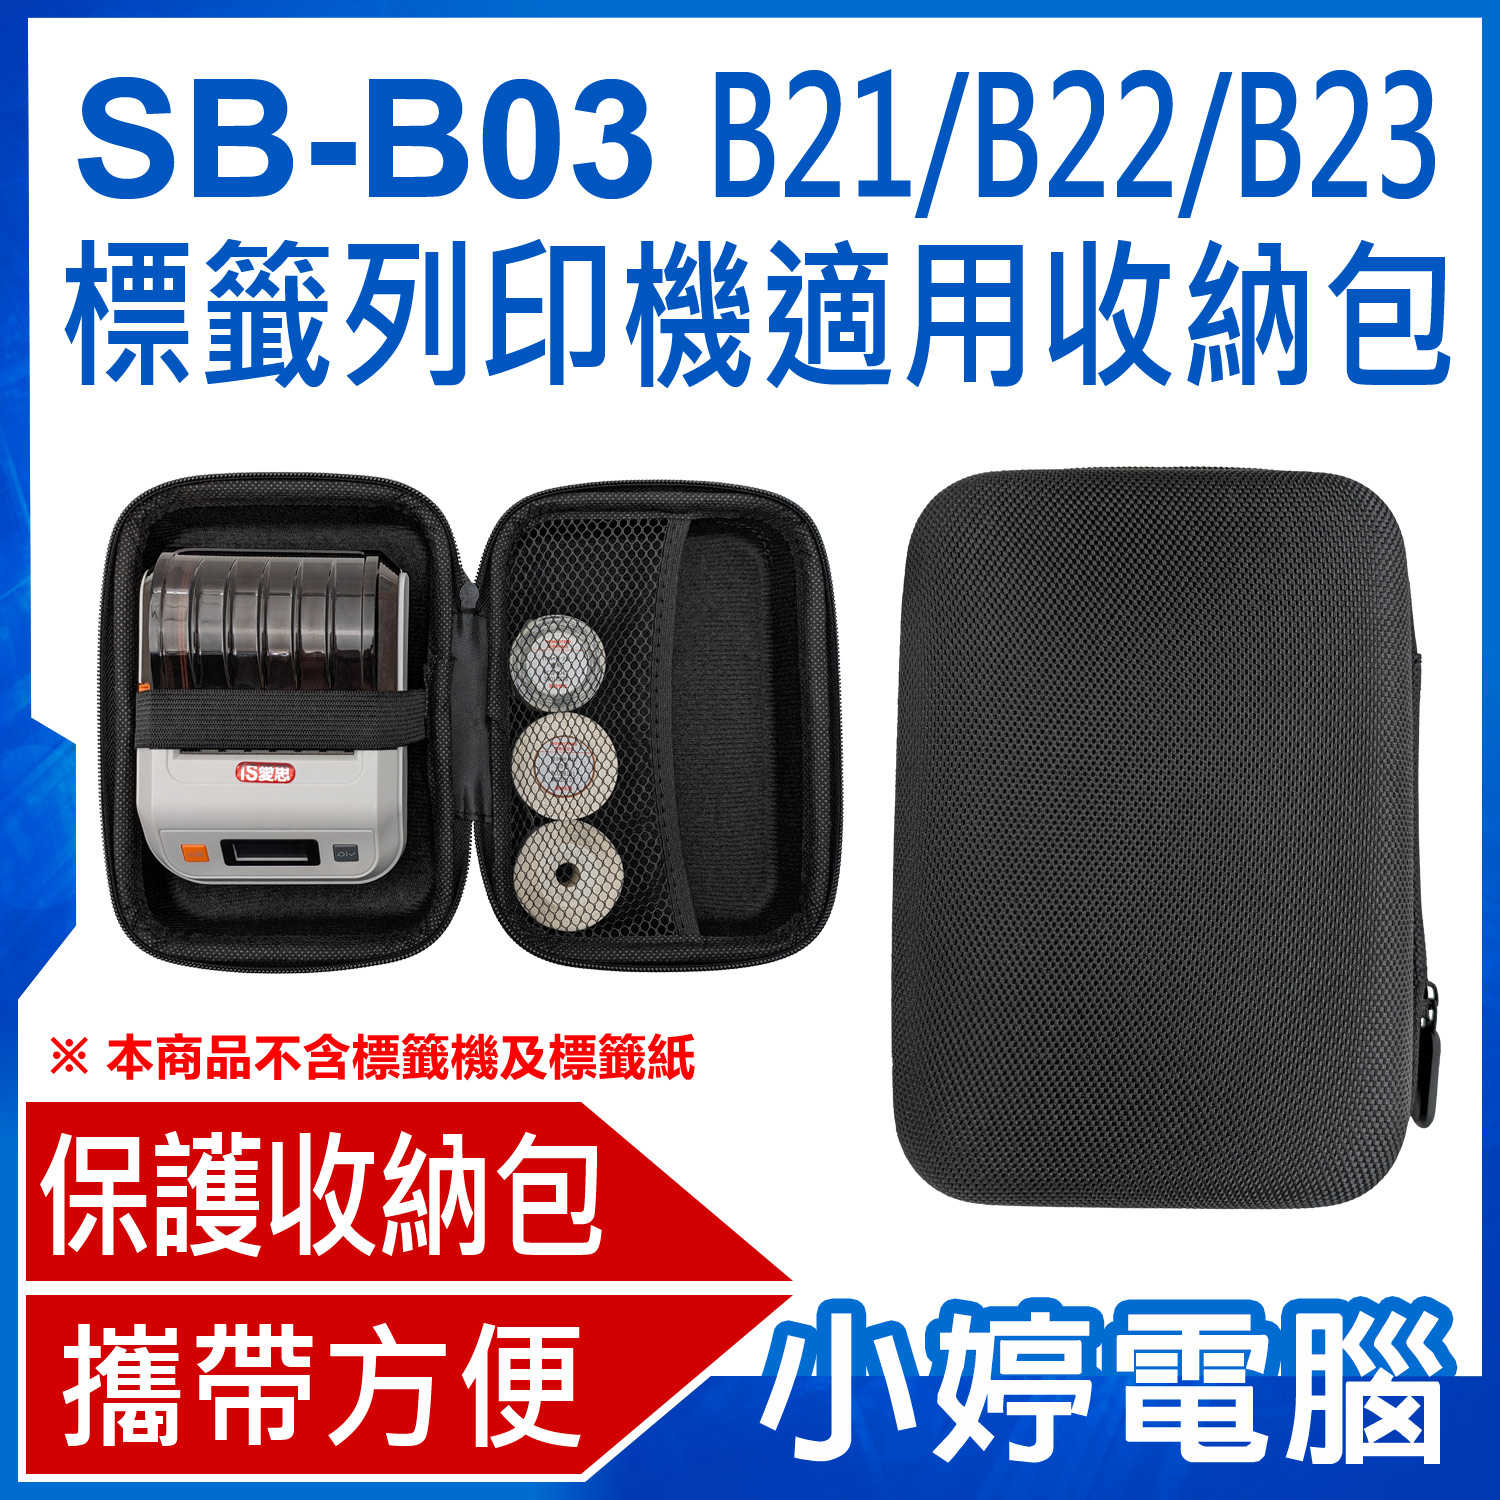 【小婷電腦】SB-B03 B21/B22/B23標籤列印機適用收納包 標籤機+標籤紙收納包 硬殼收納包 防震防撞 外出